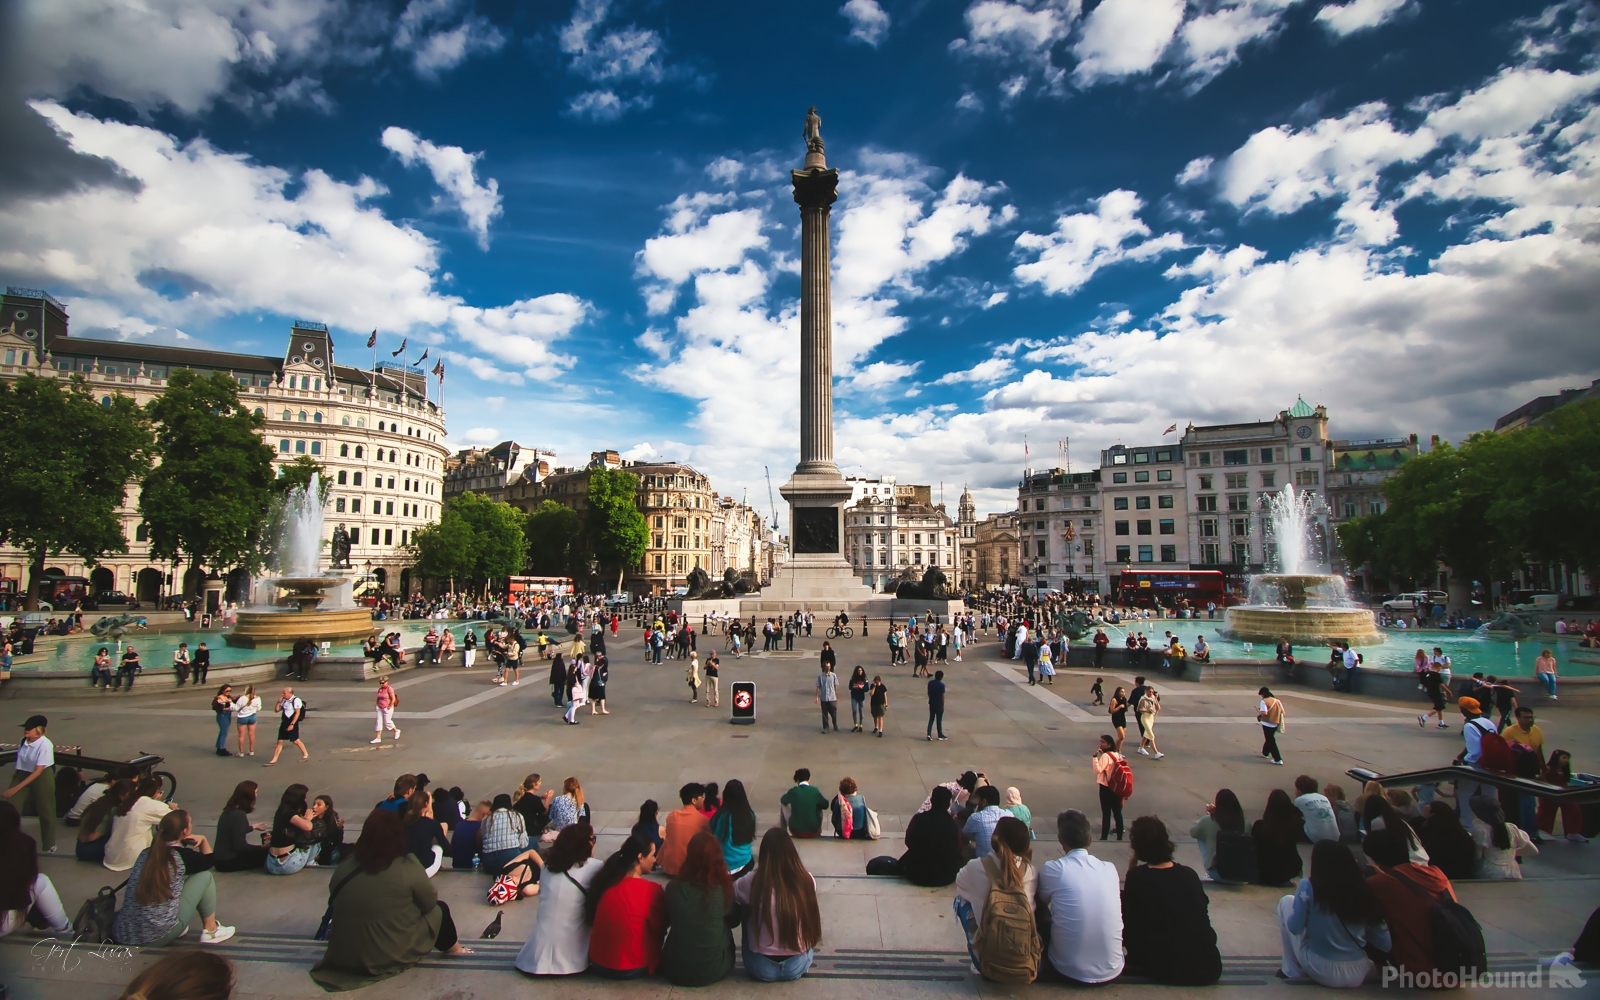 Image of Trafalgar Square by Gert Lucas